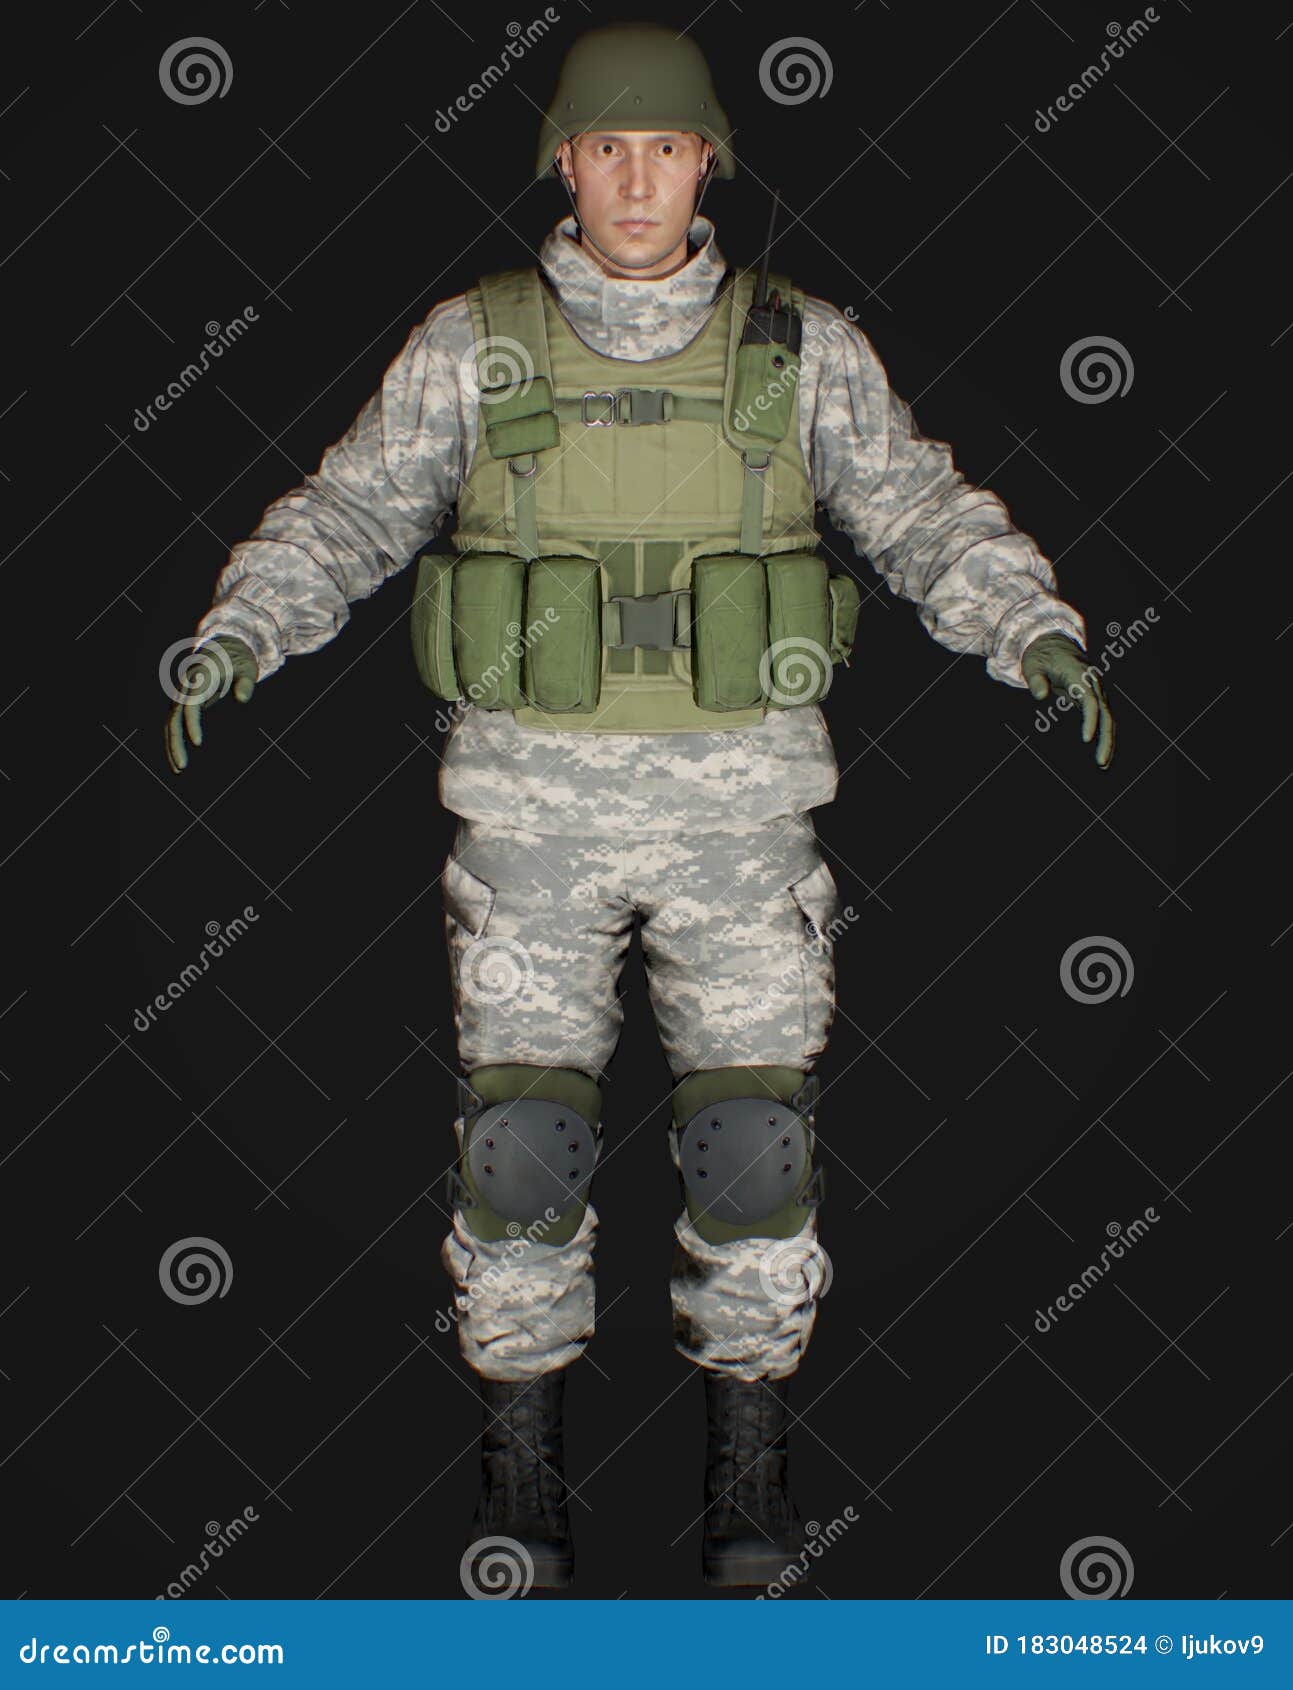 Avatar masculino de profissão de soldado de renderização em 3d